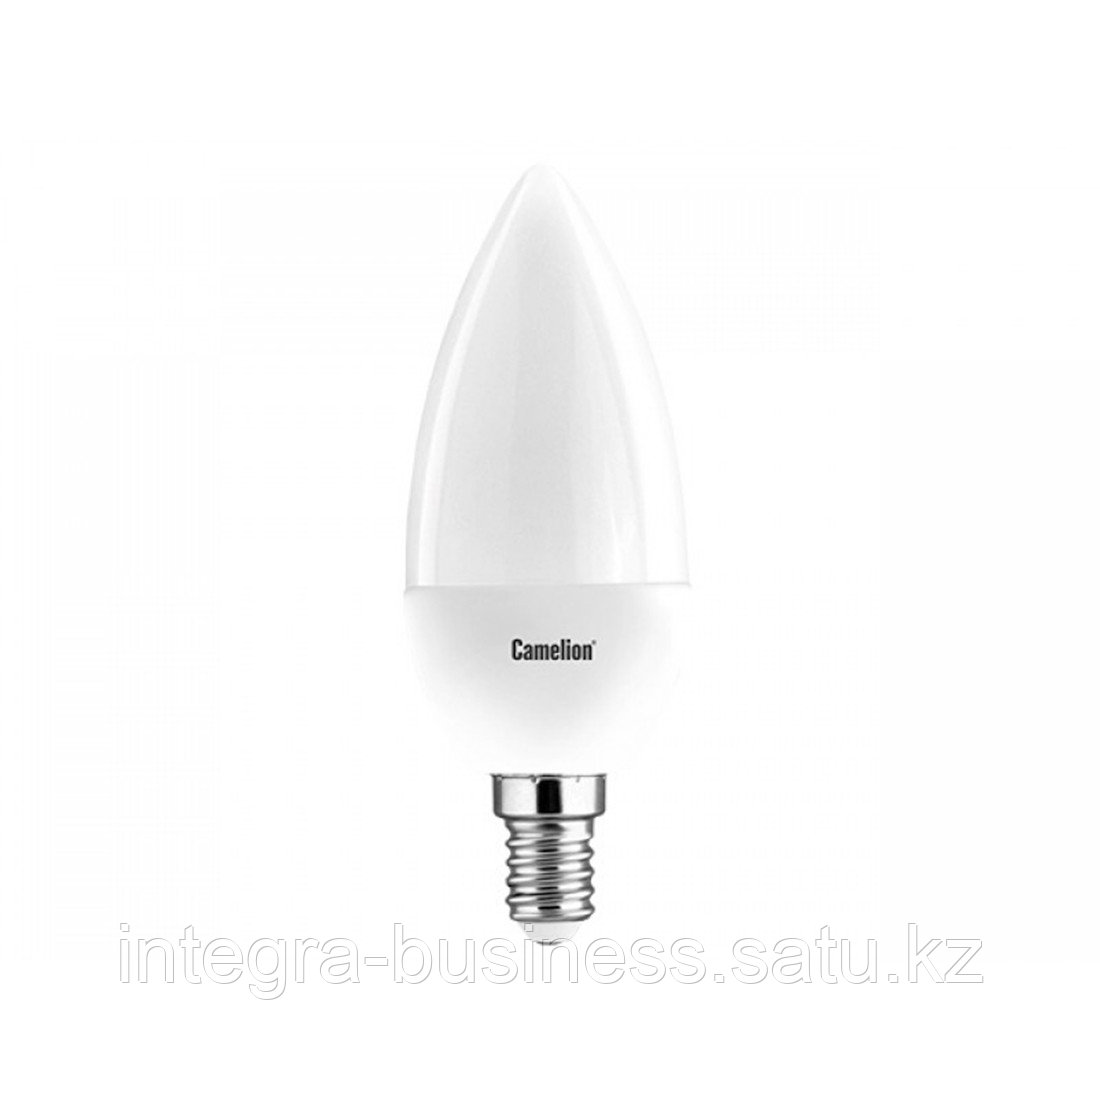 Эл. лампа светодиодная Camelion LED7-C35/865/E14, Дневной